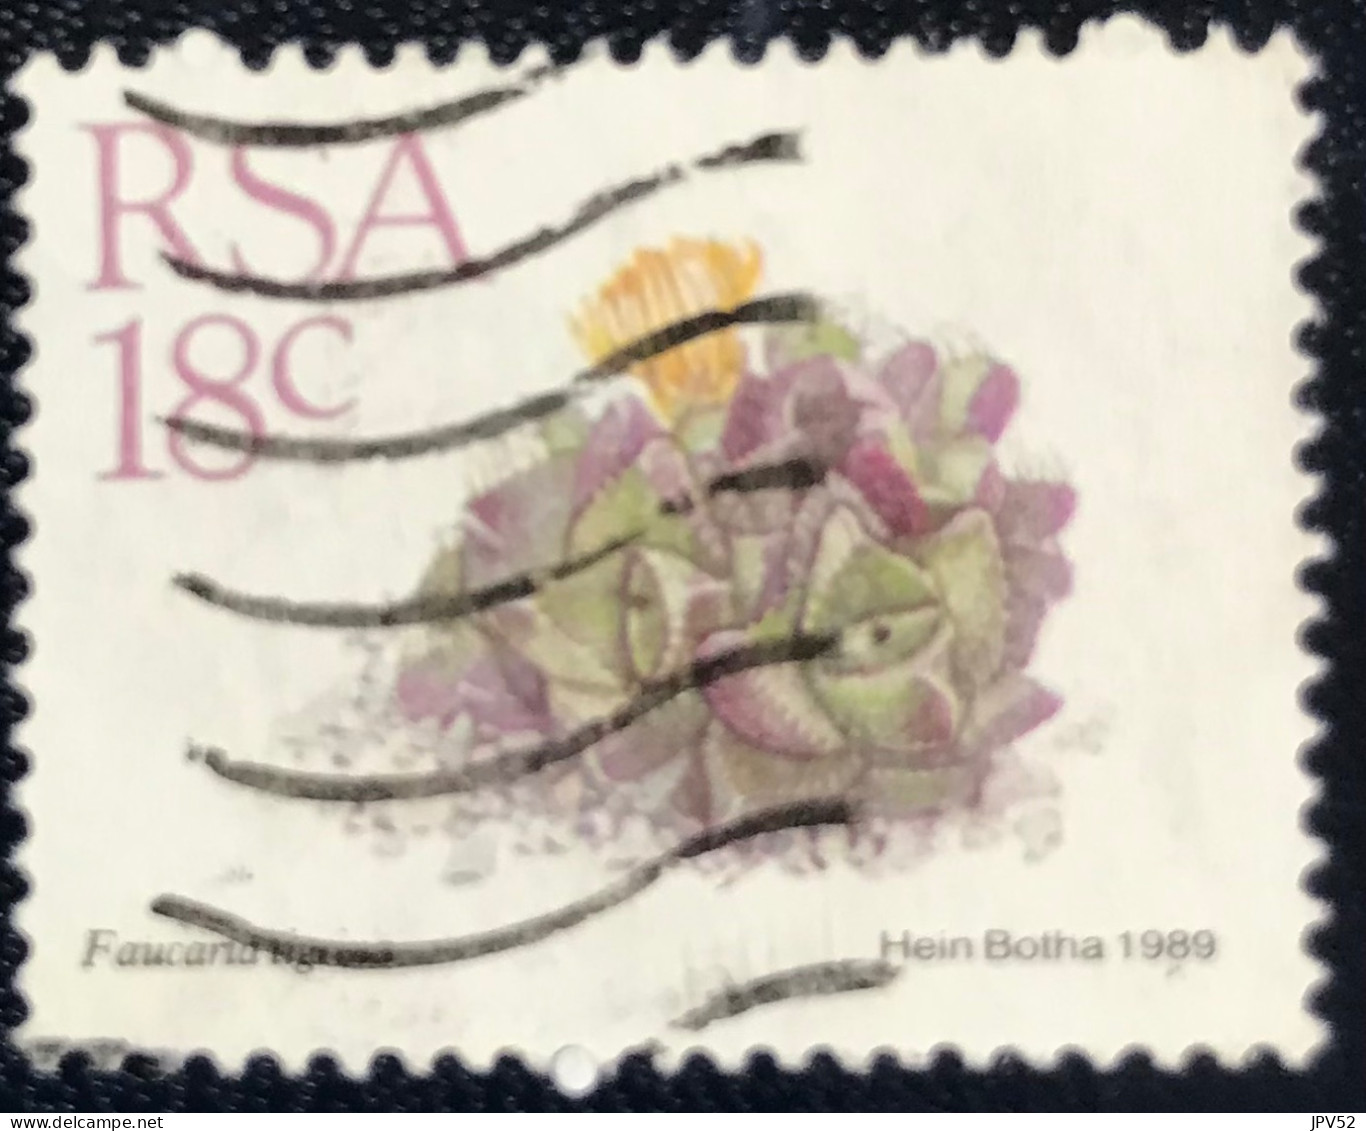 RSA - South Africa - Suid-Afrika  - C18/6 - 1989 - (°)used - Michel 770 - Vetplanten - Usados